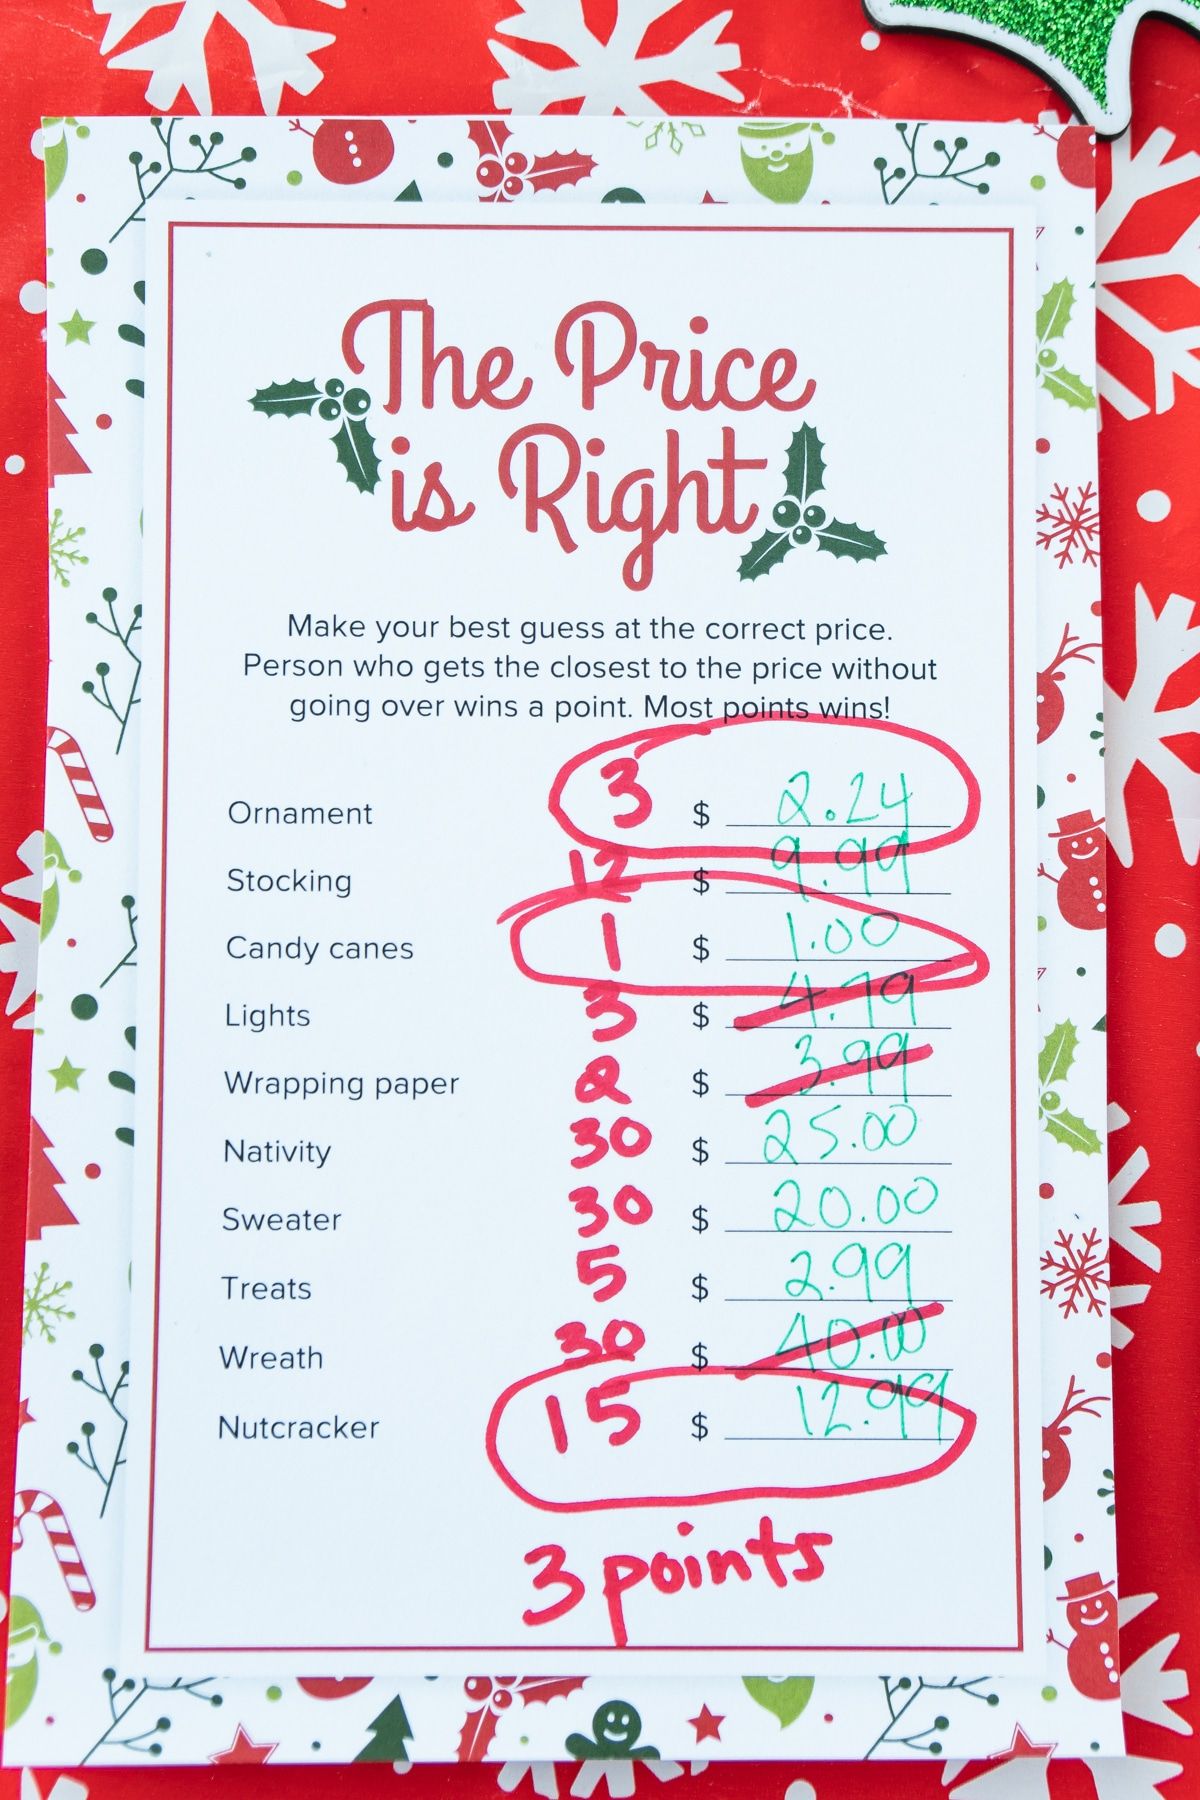 El preu de Nadal és un joc correcte amb preguntes encerclades